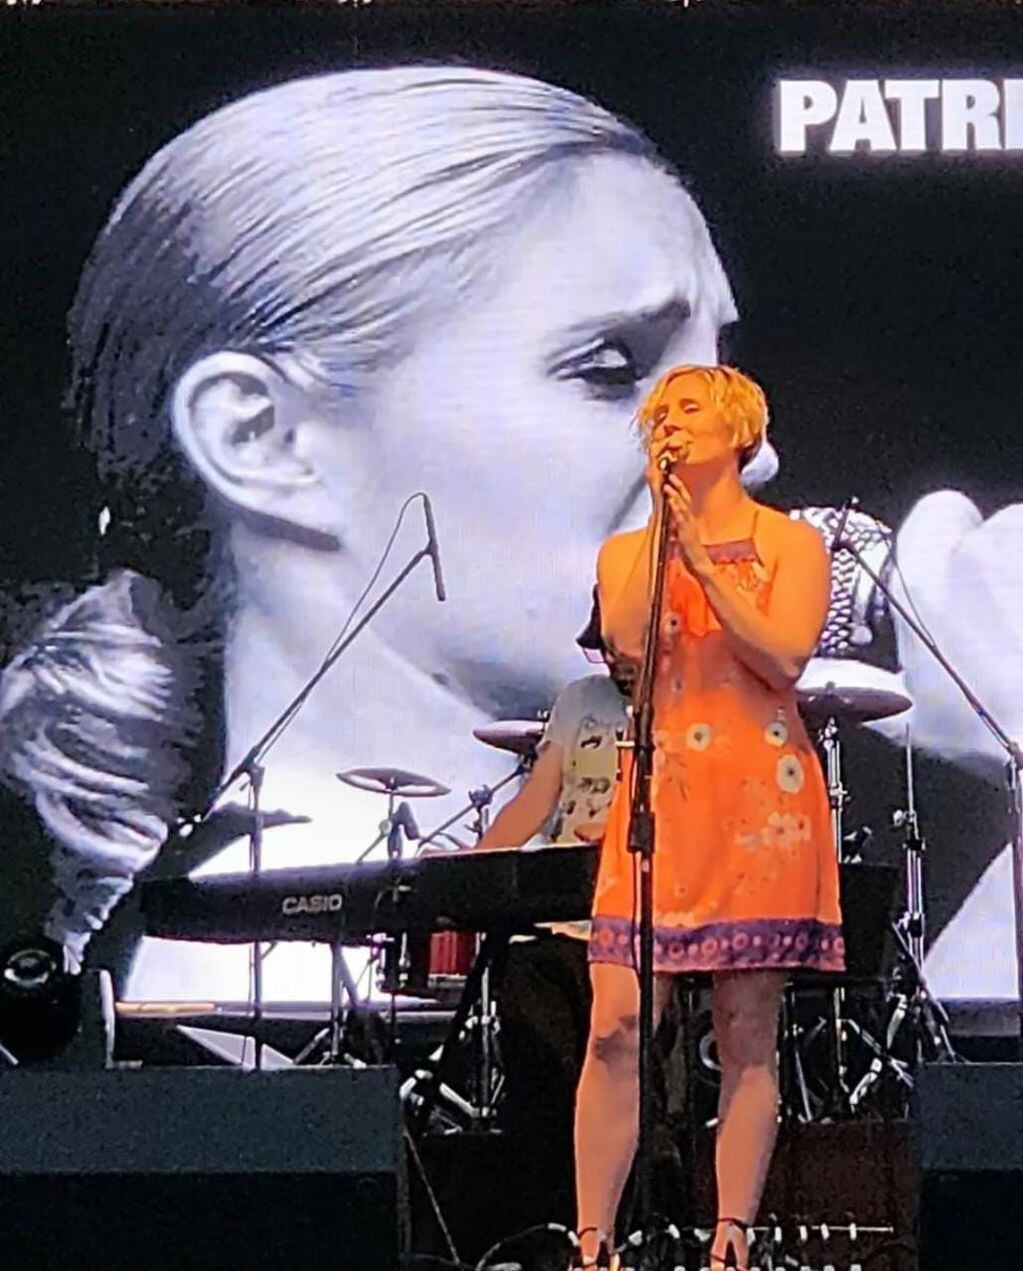 Patricia Reve y su faceta artística como cantante.